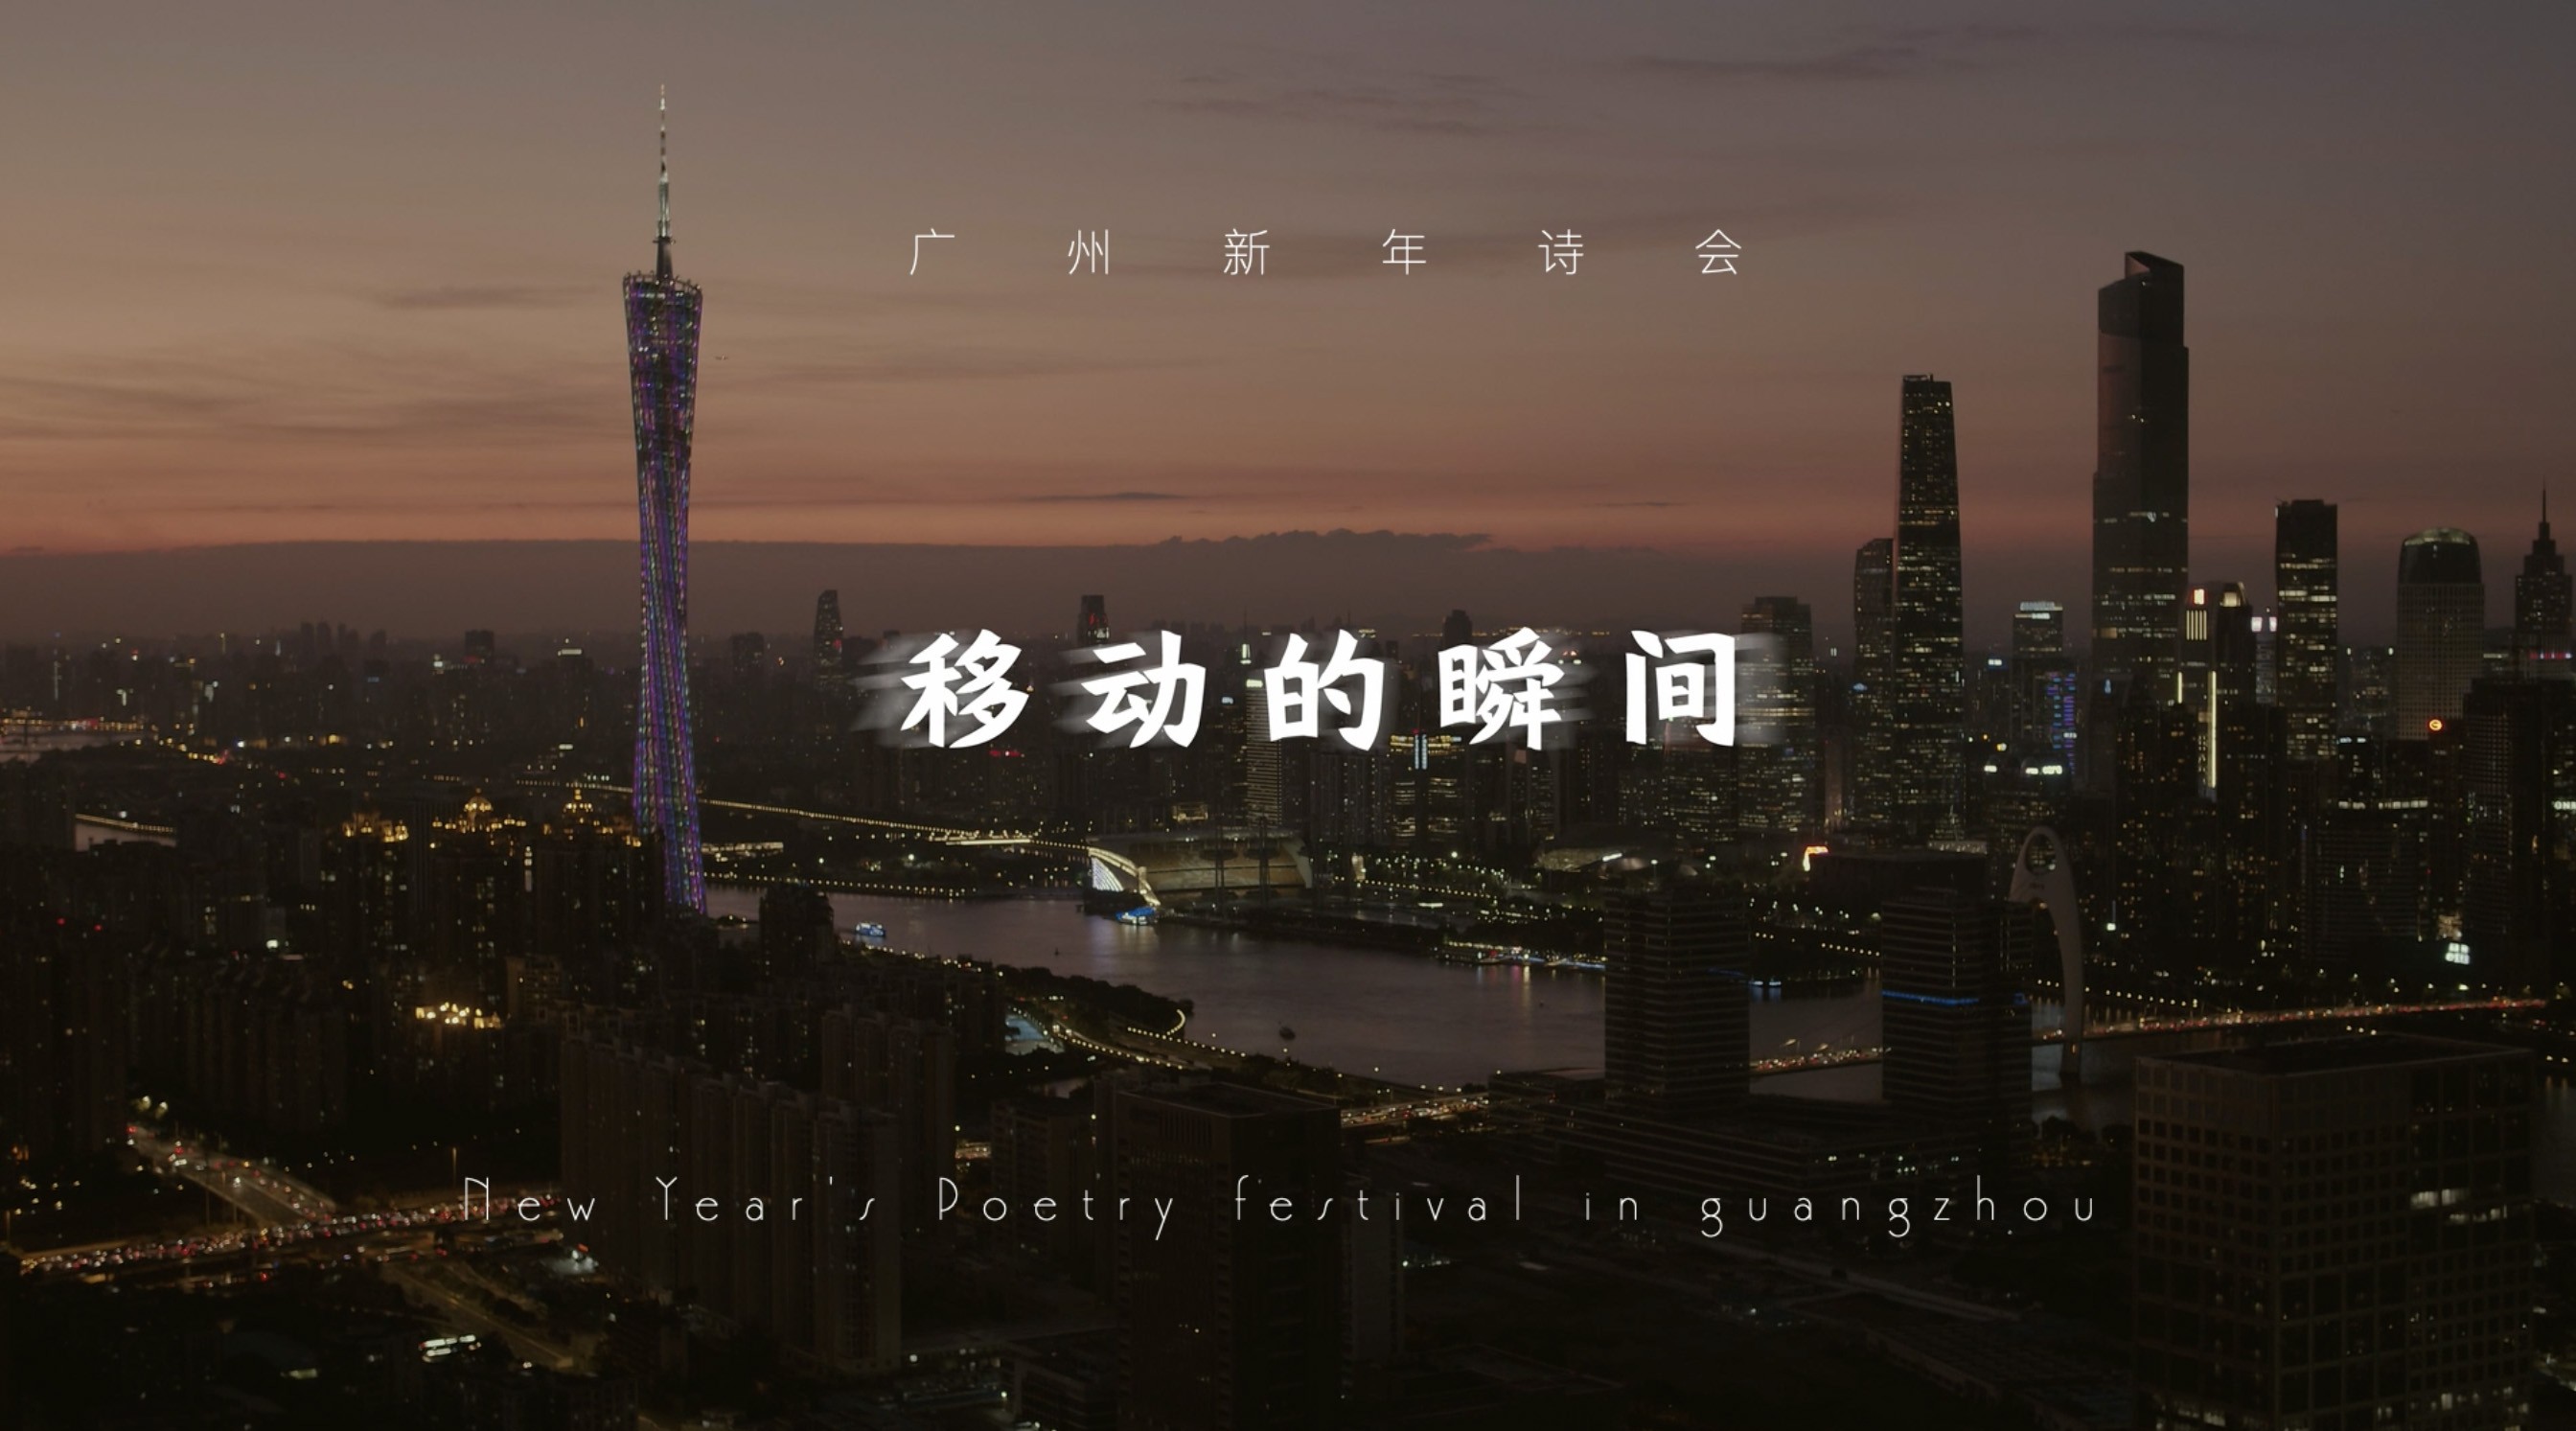 广州新年诗会2019 | 移动的瞬间 